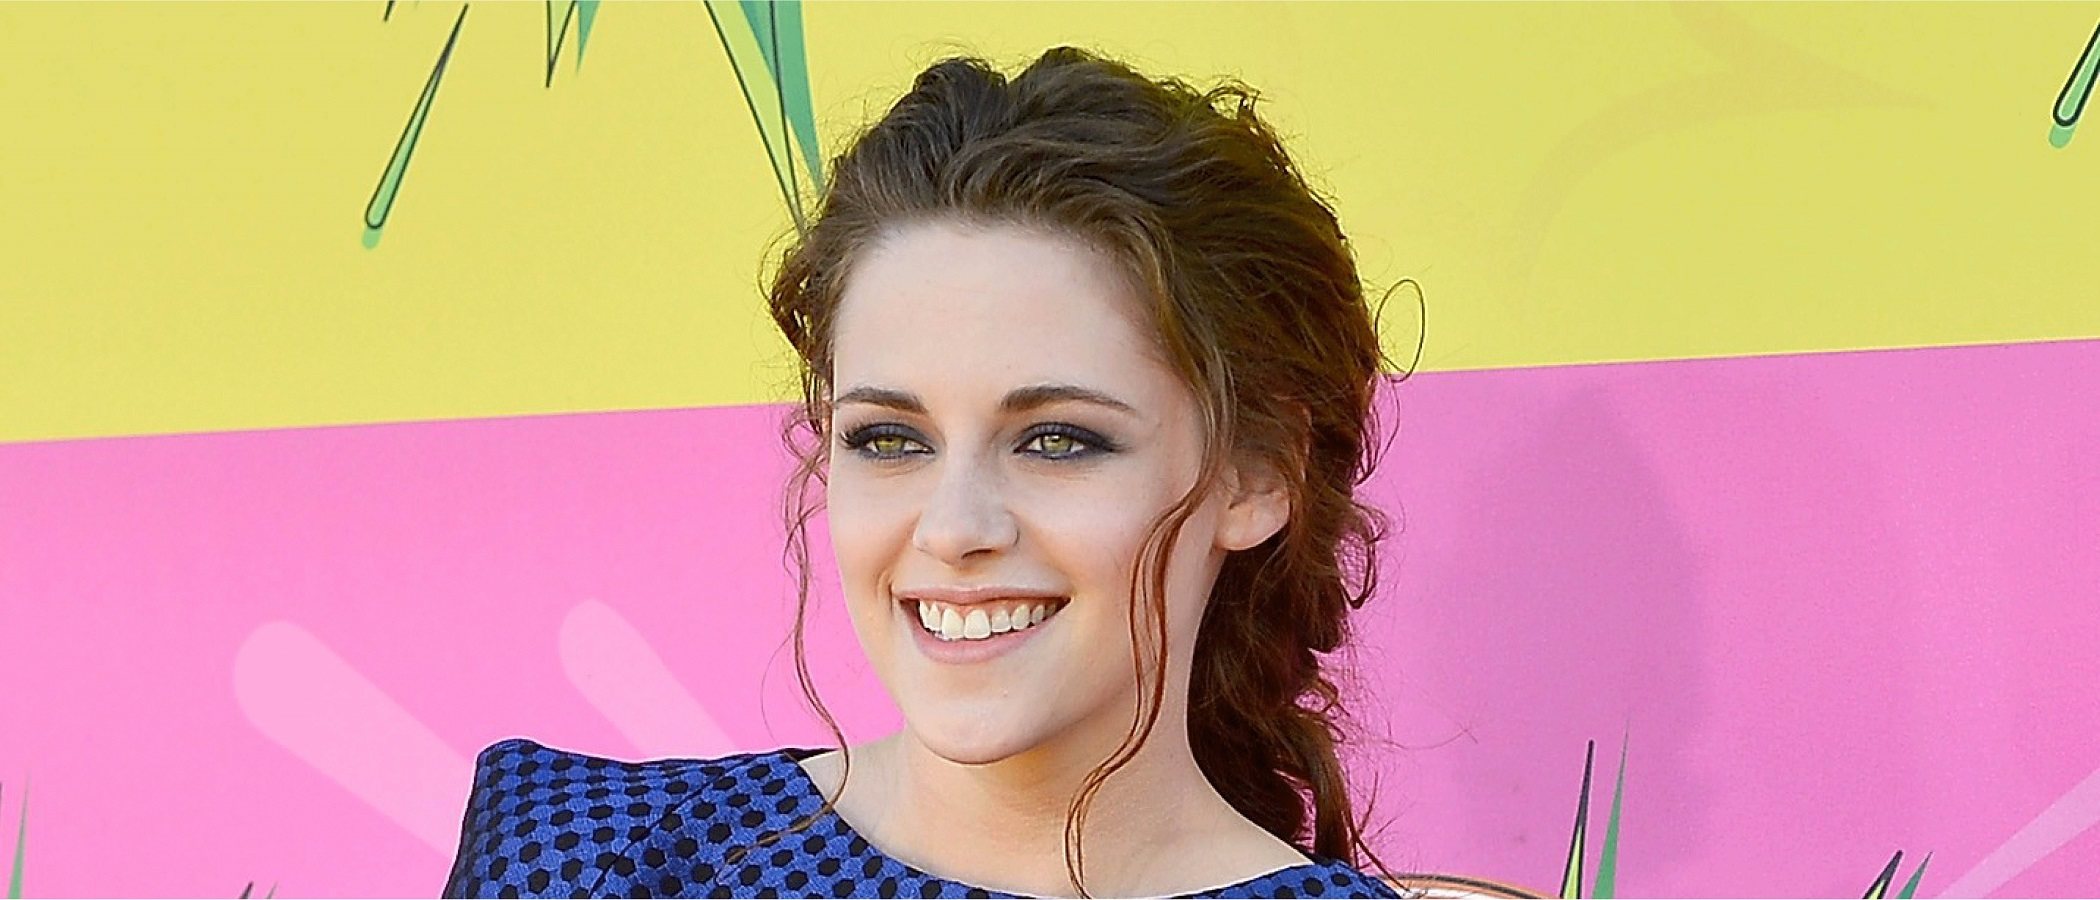 La evolución de estilismo de Kristen Stewart: de estrella adolescente a musa de Chanel